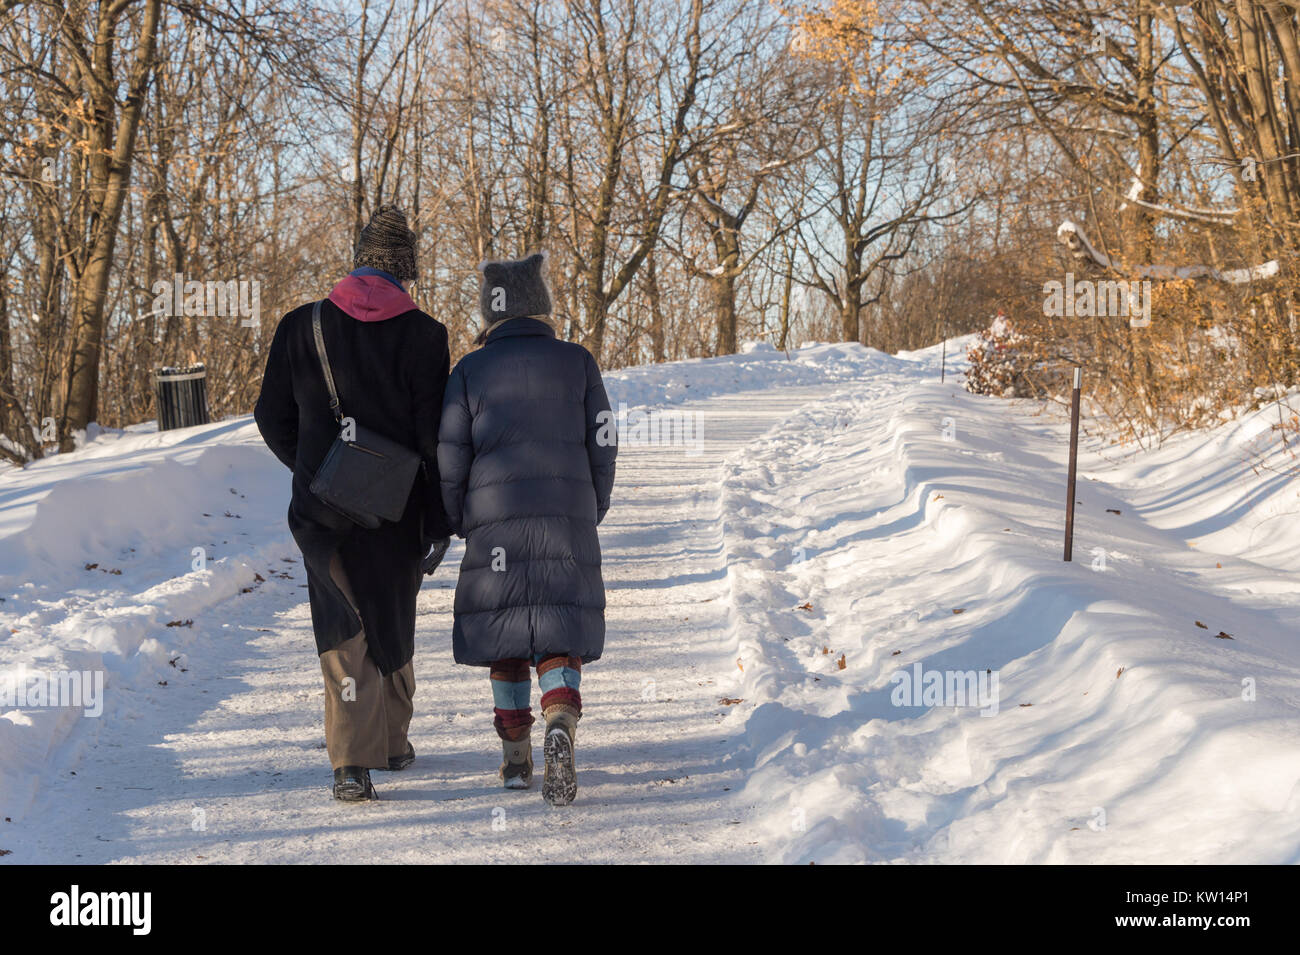 Montréal, CA - 26 décembre 2017 : couple en train de marcher sur un sentier enneigé à Montréal sur le mont Royal Park (parc du Mont-Royal) Banque D'Images